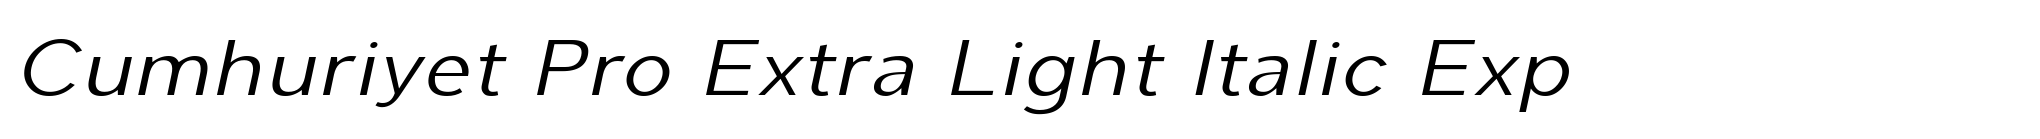 Cumhuriyet Pro Extra Light Italic Exp image